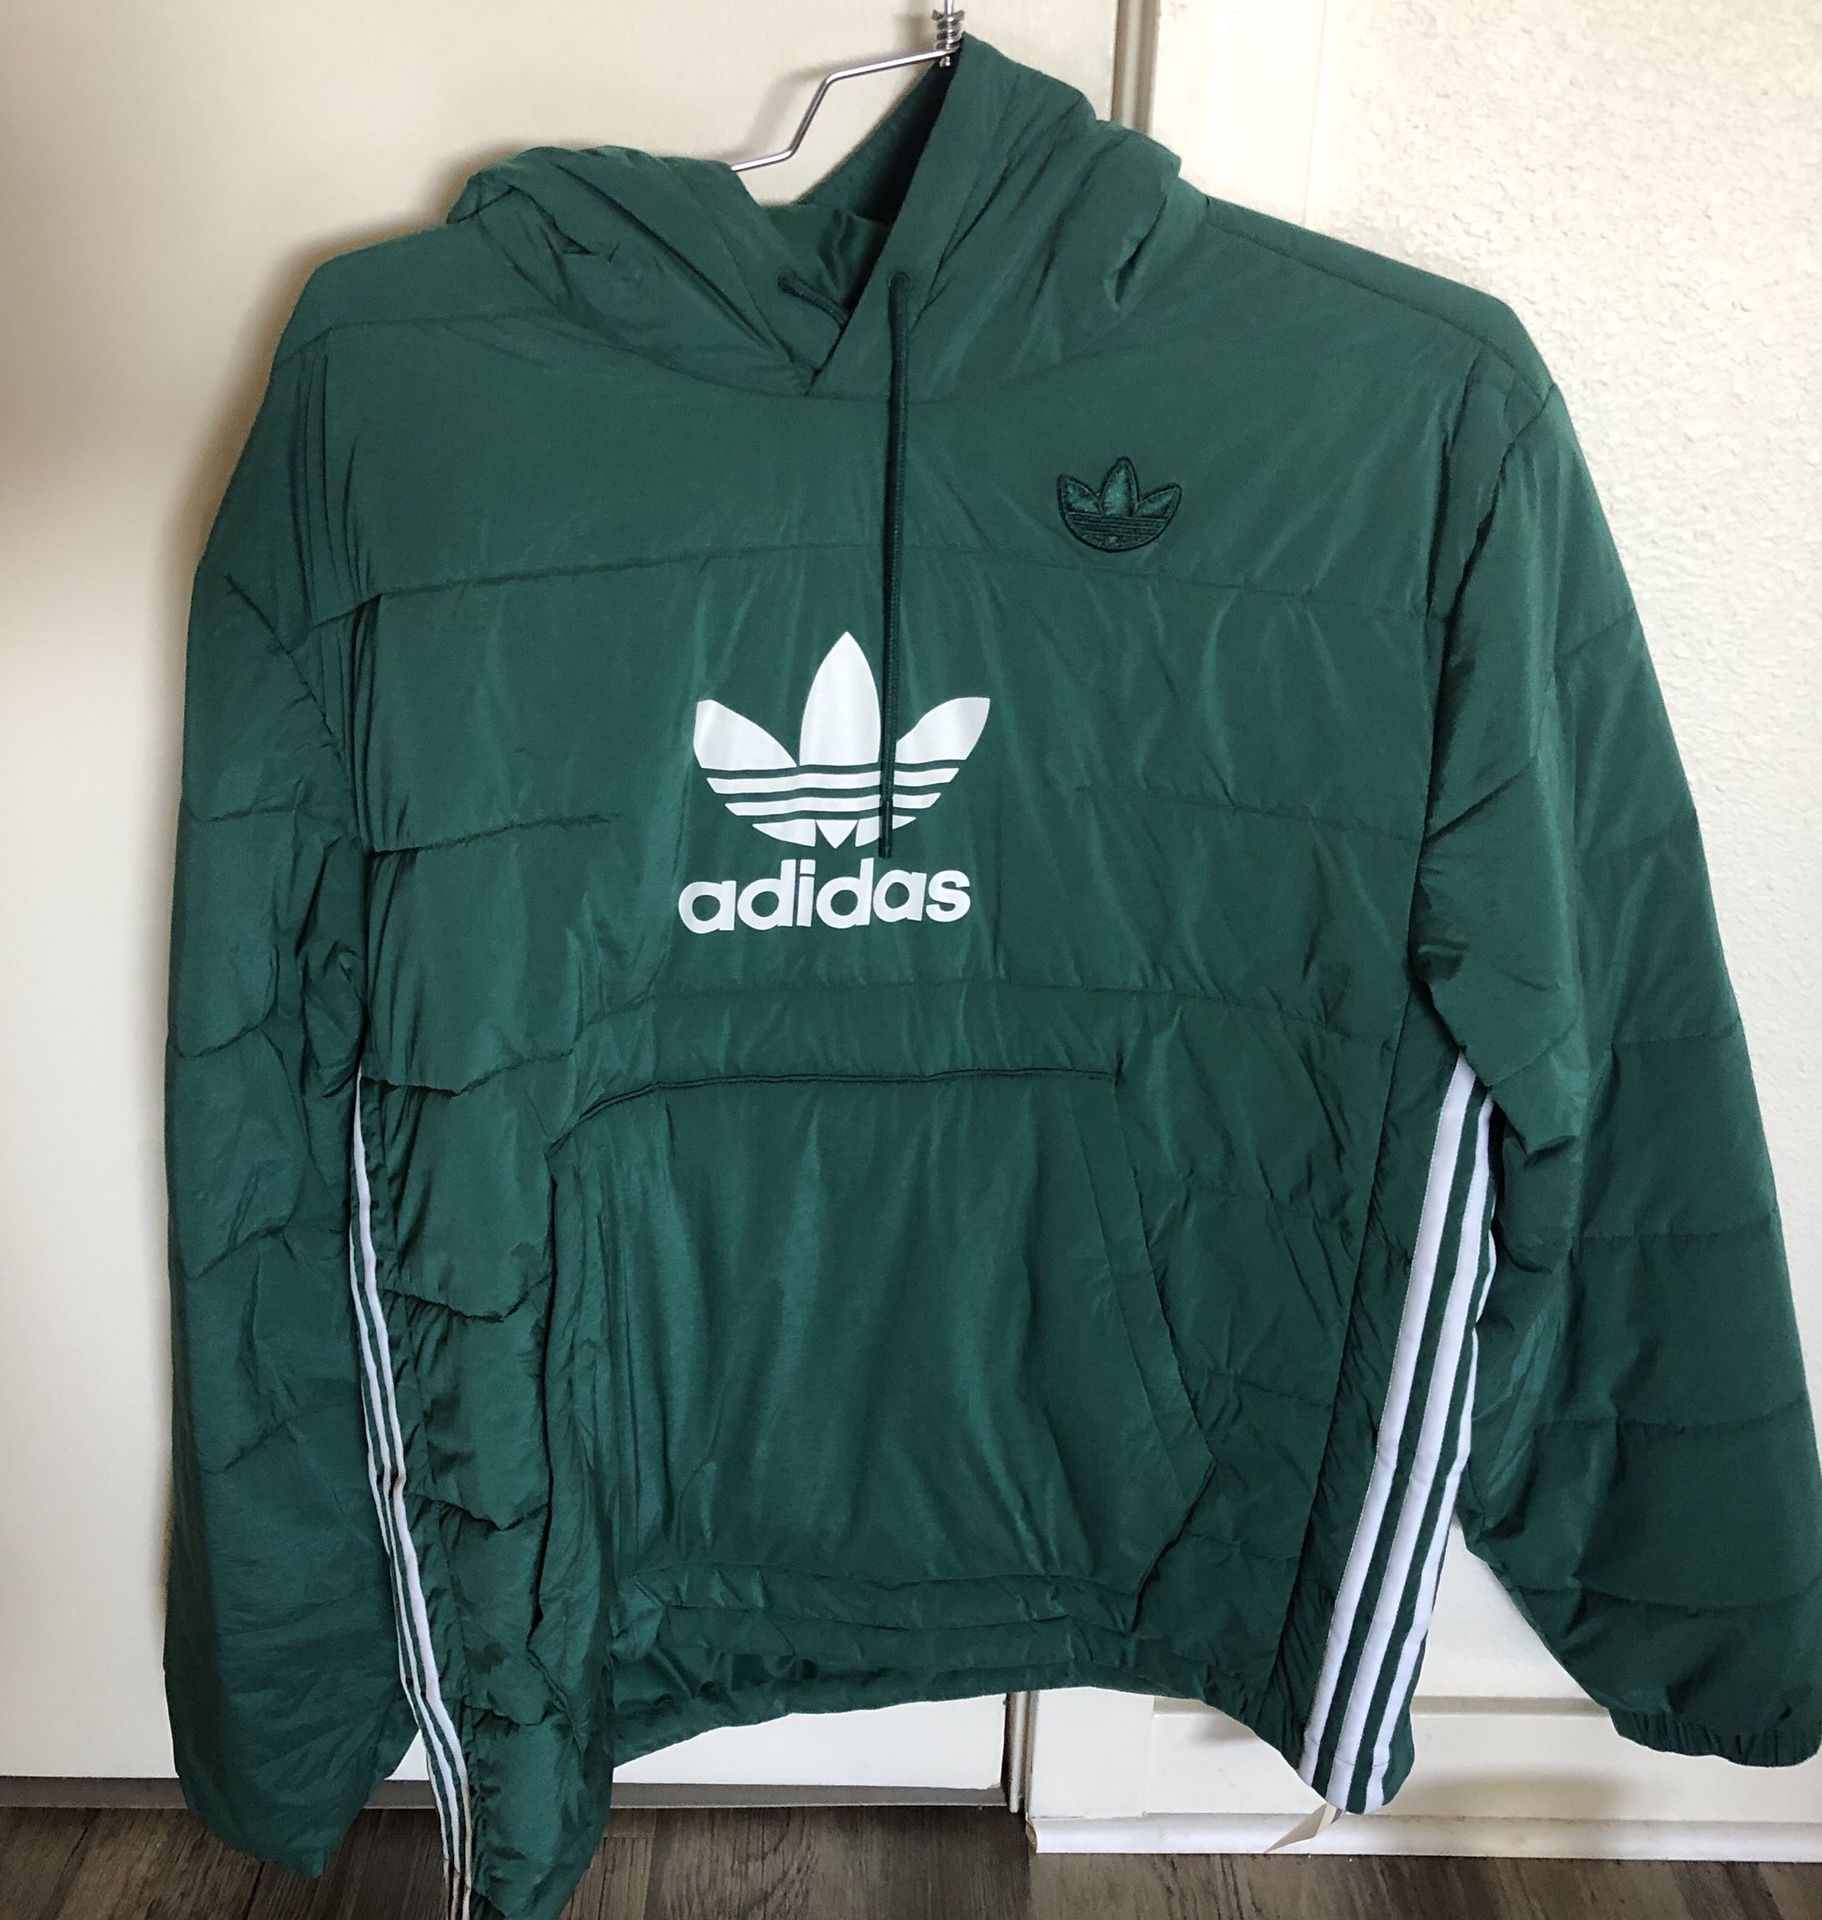 Men’s Adidas Originals Green Jacket Coat Size M